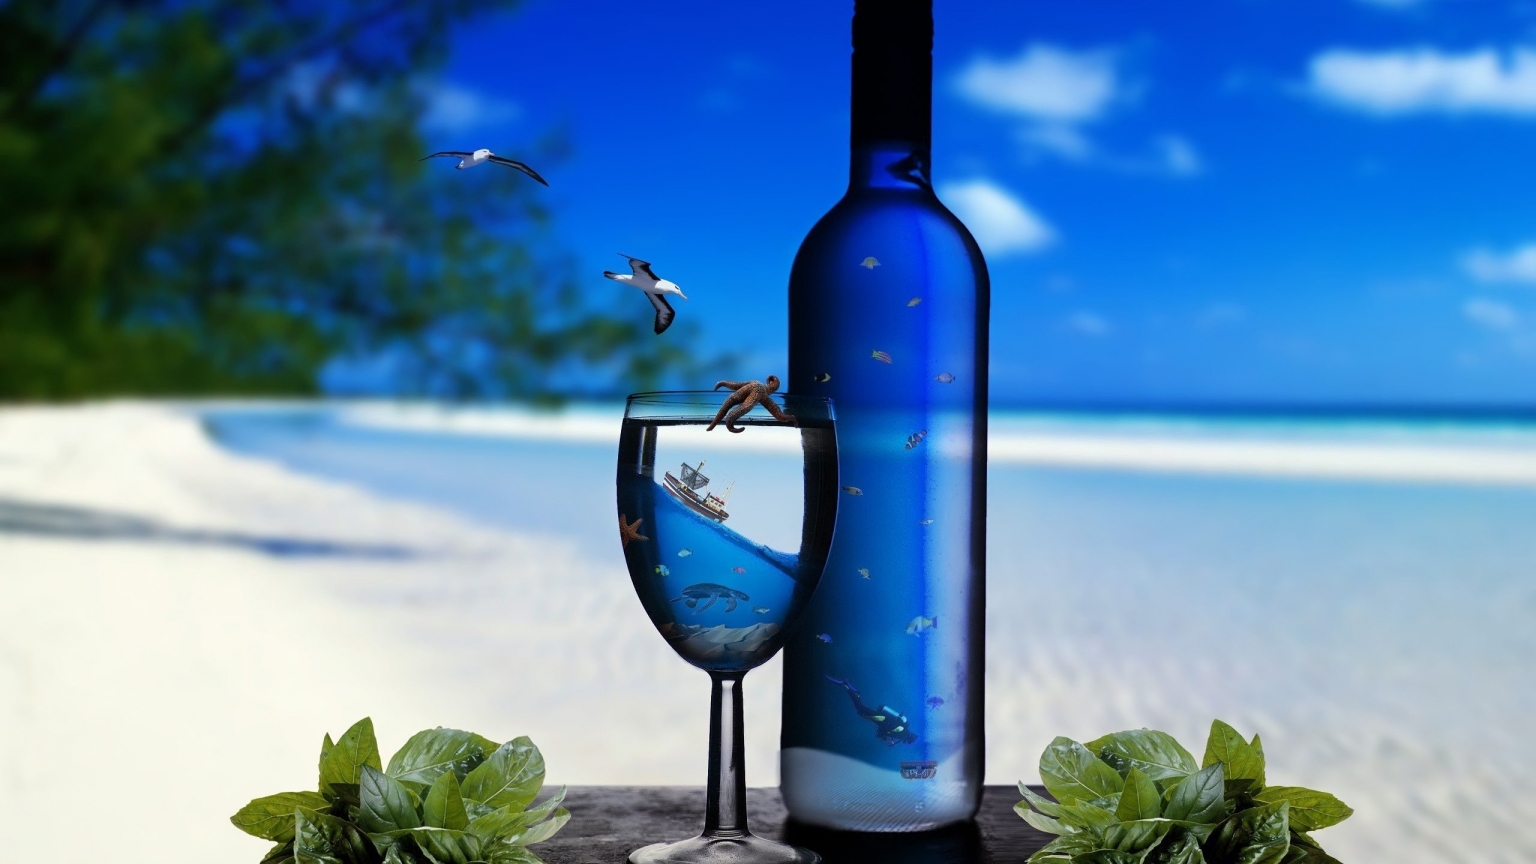 Ocean Glass Bottles for 1536 x 864 HDTV resolution